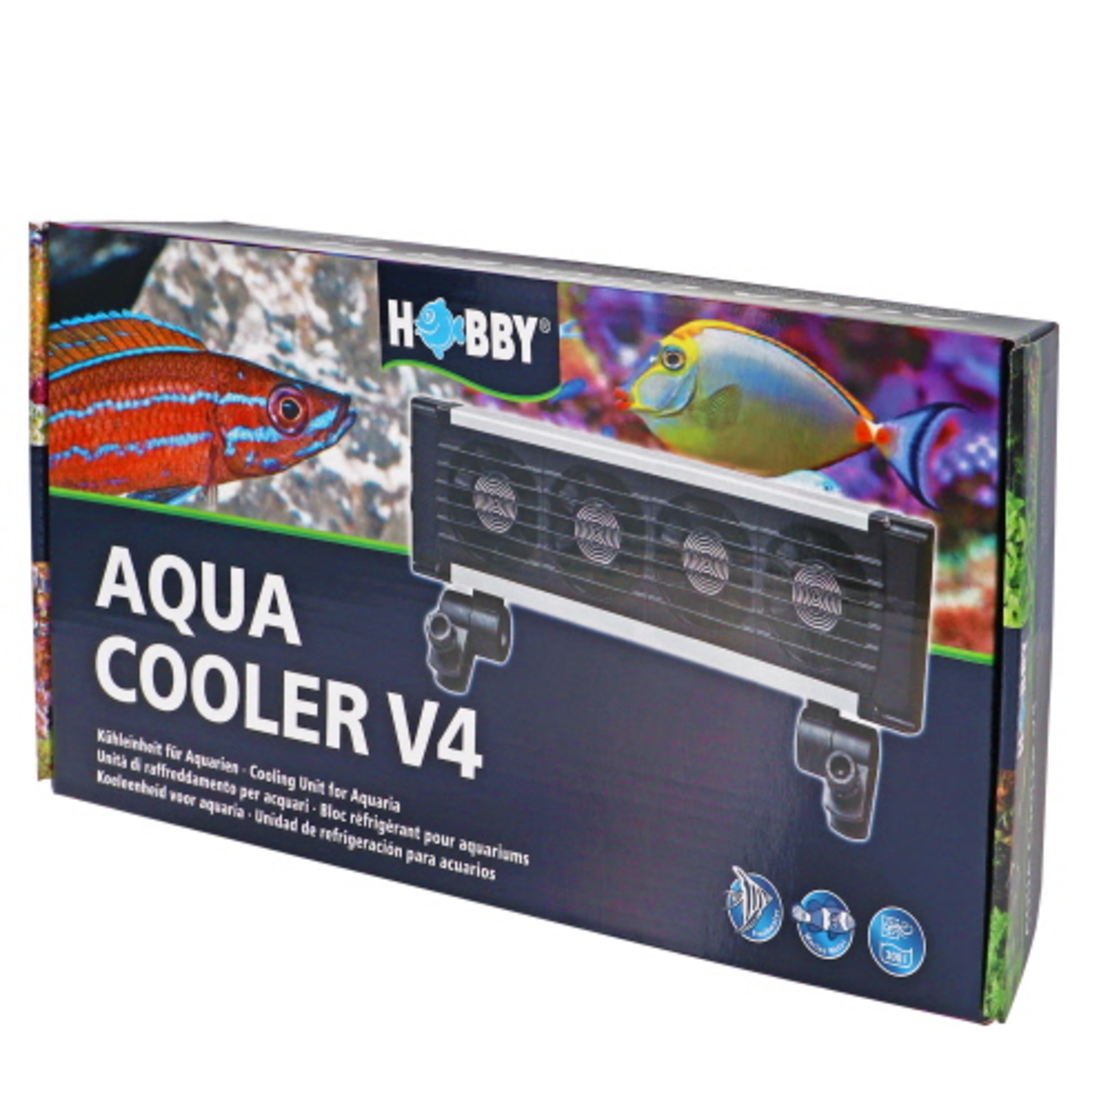 מאוורר לקירור אקווריום 4 יח' | Aqua Cooler V4